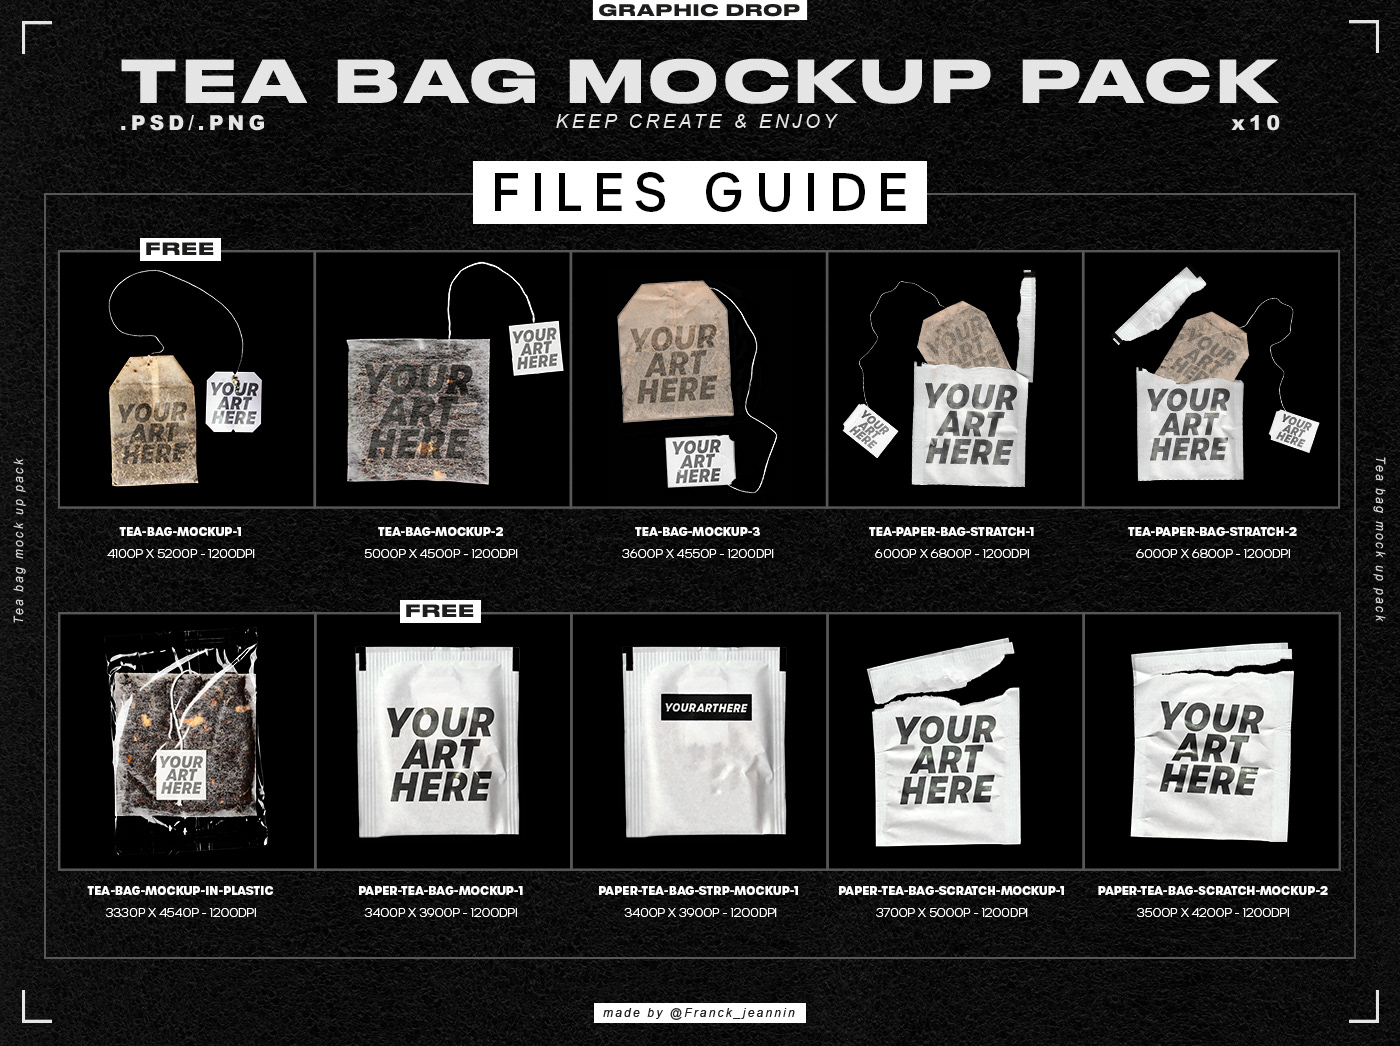 Files guide of the mockup pack 10 tea bag mockup 